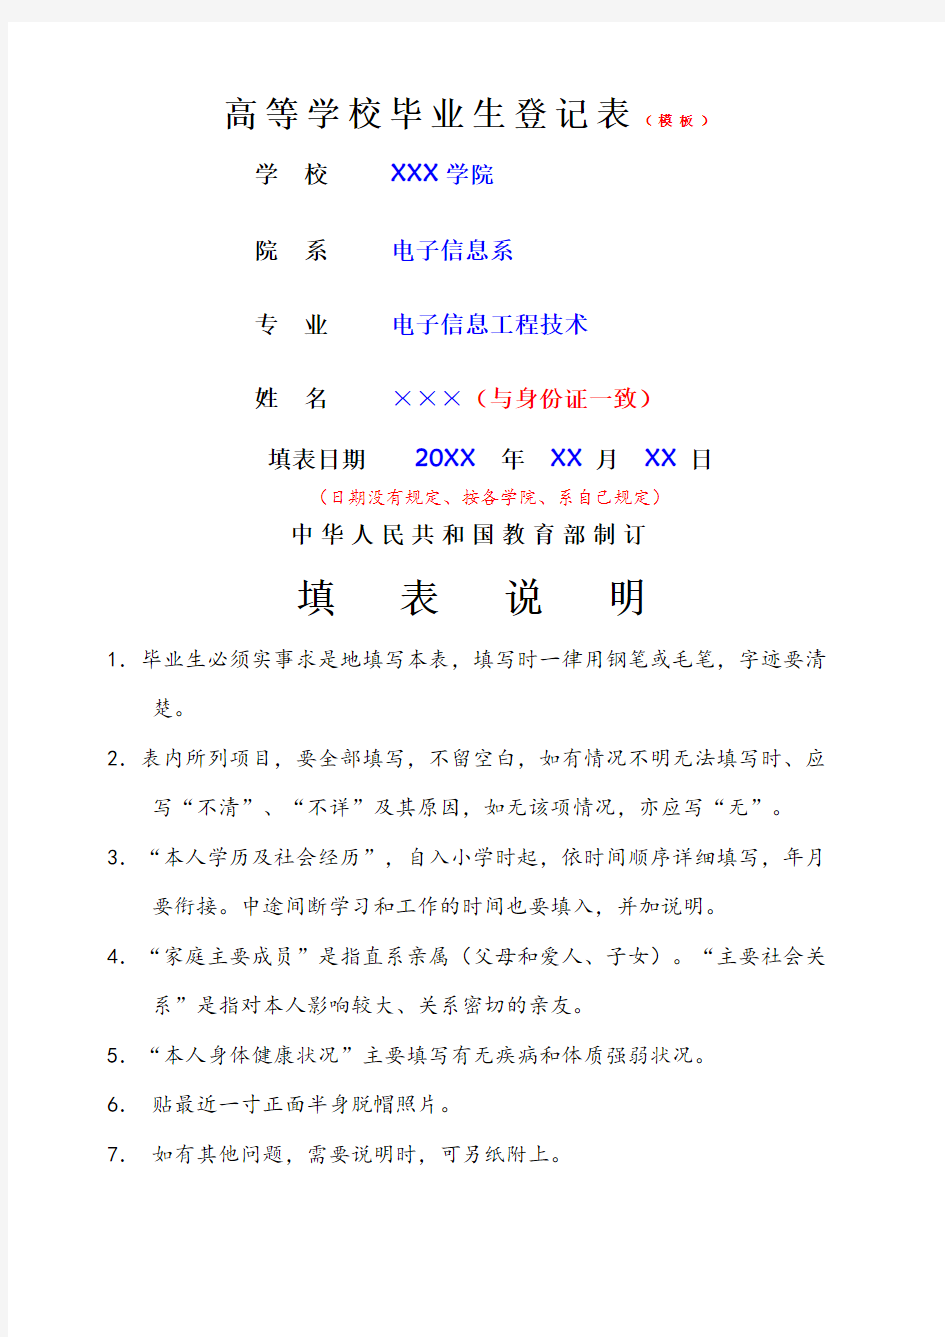 广东省普通高等学校毕业生就业登记表填写示范